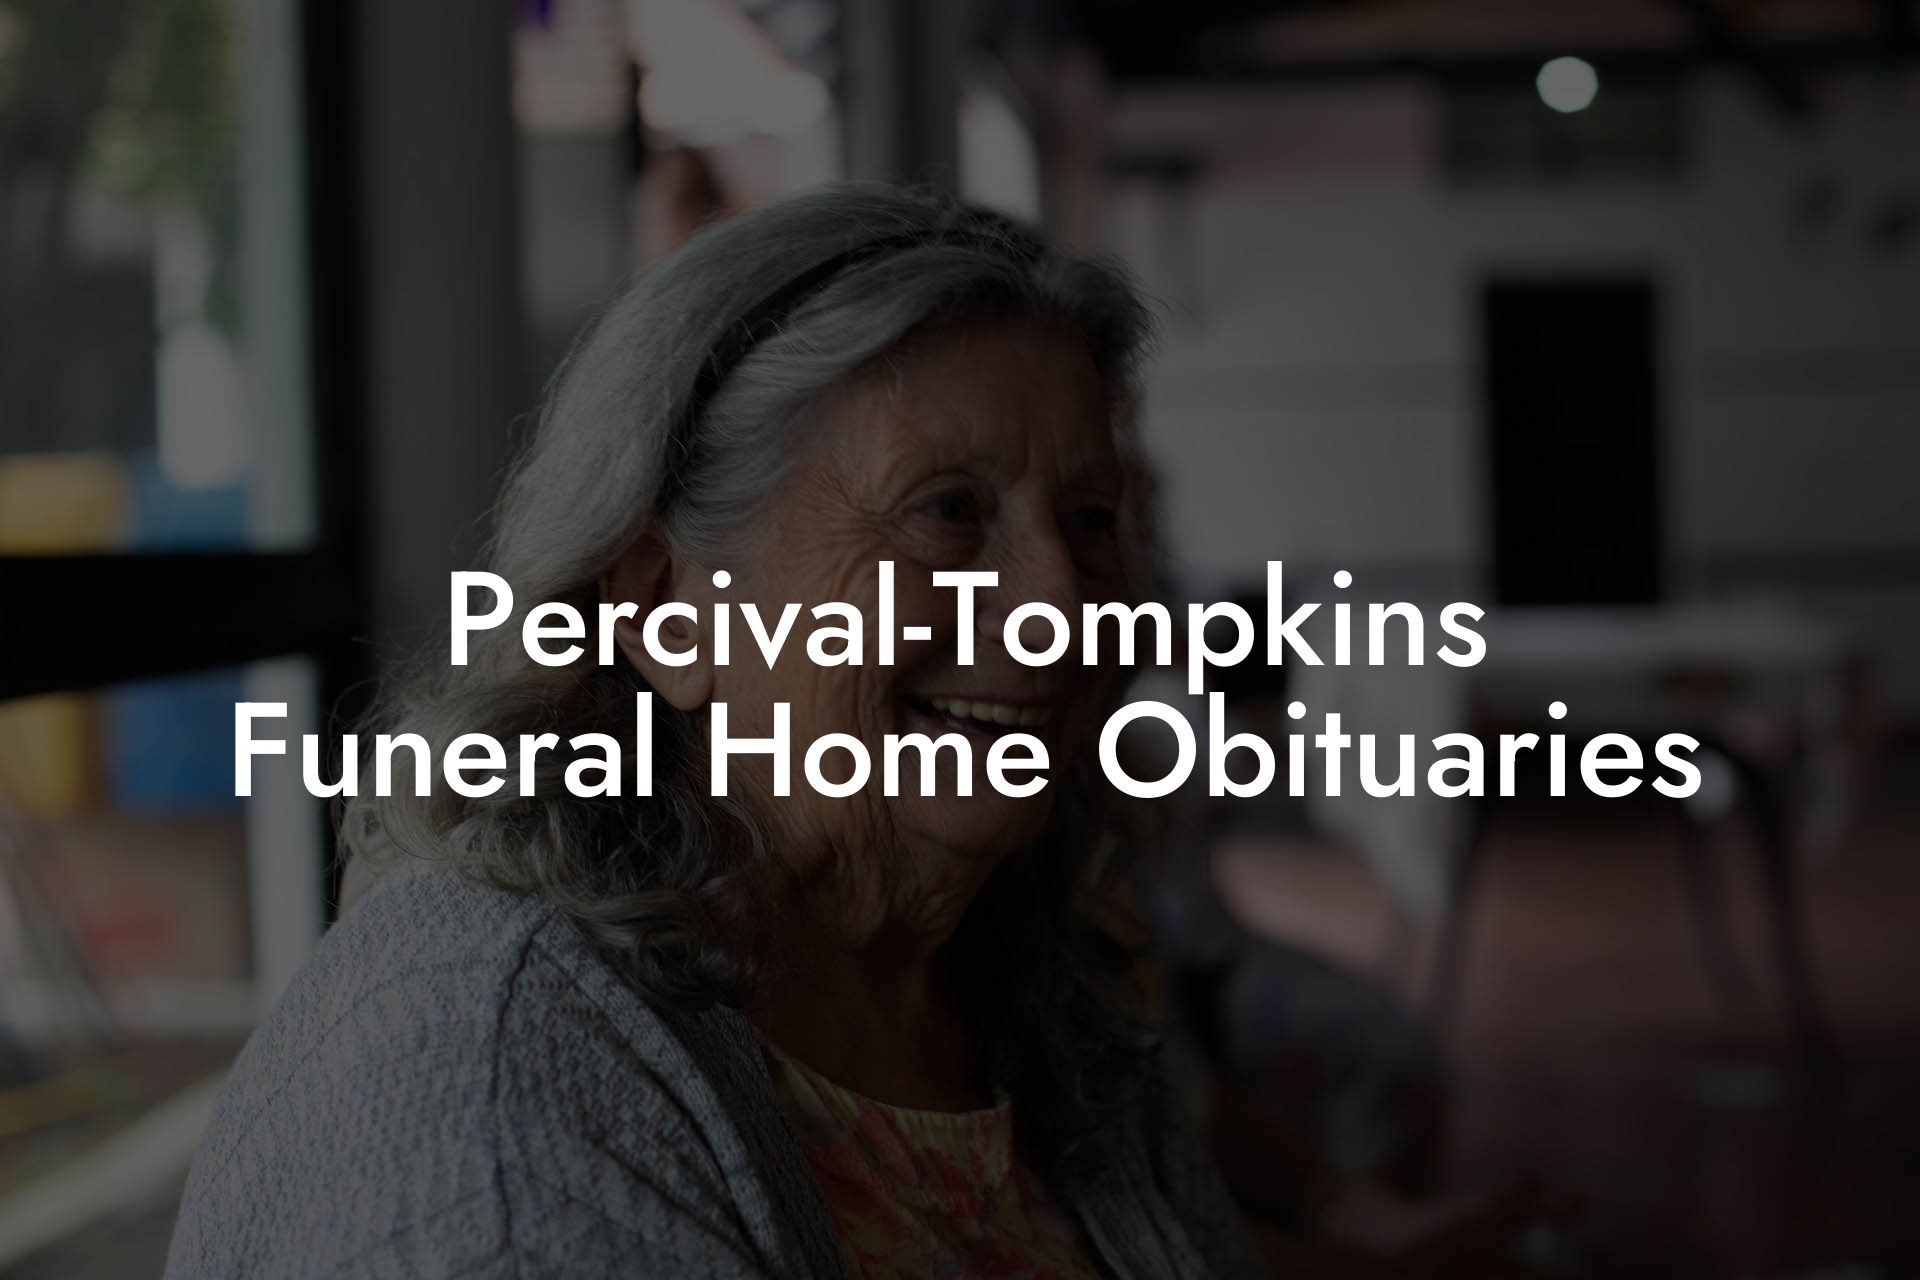 Percival-Tompkins Funeral Home Obituaries